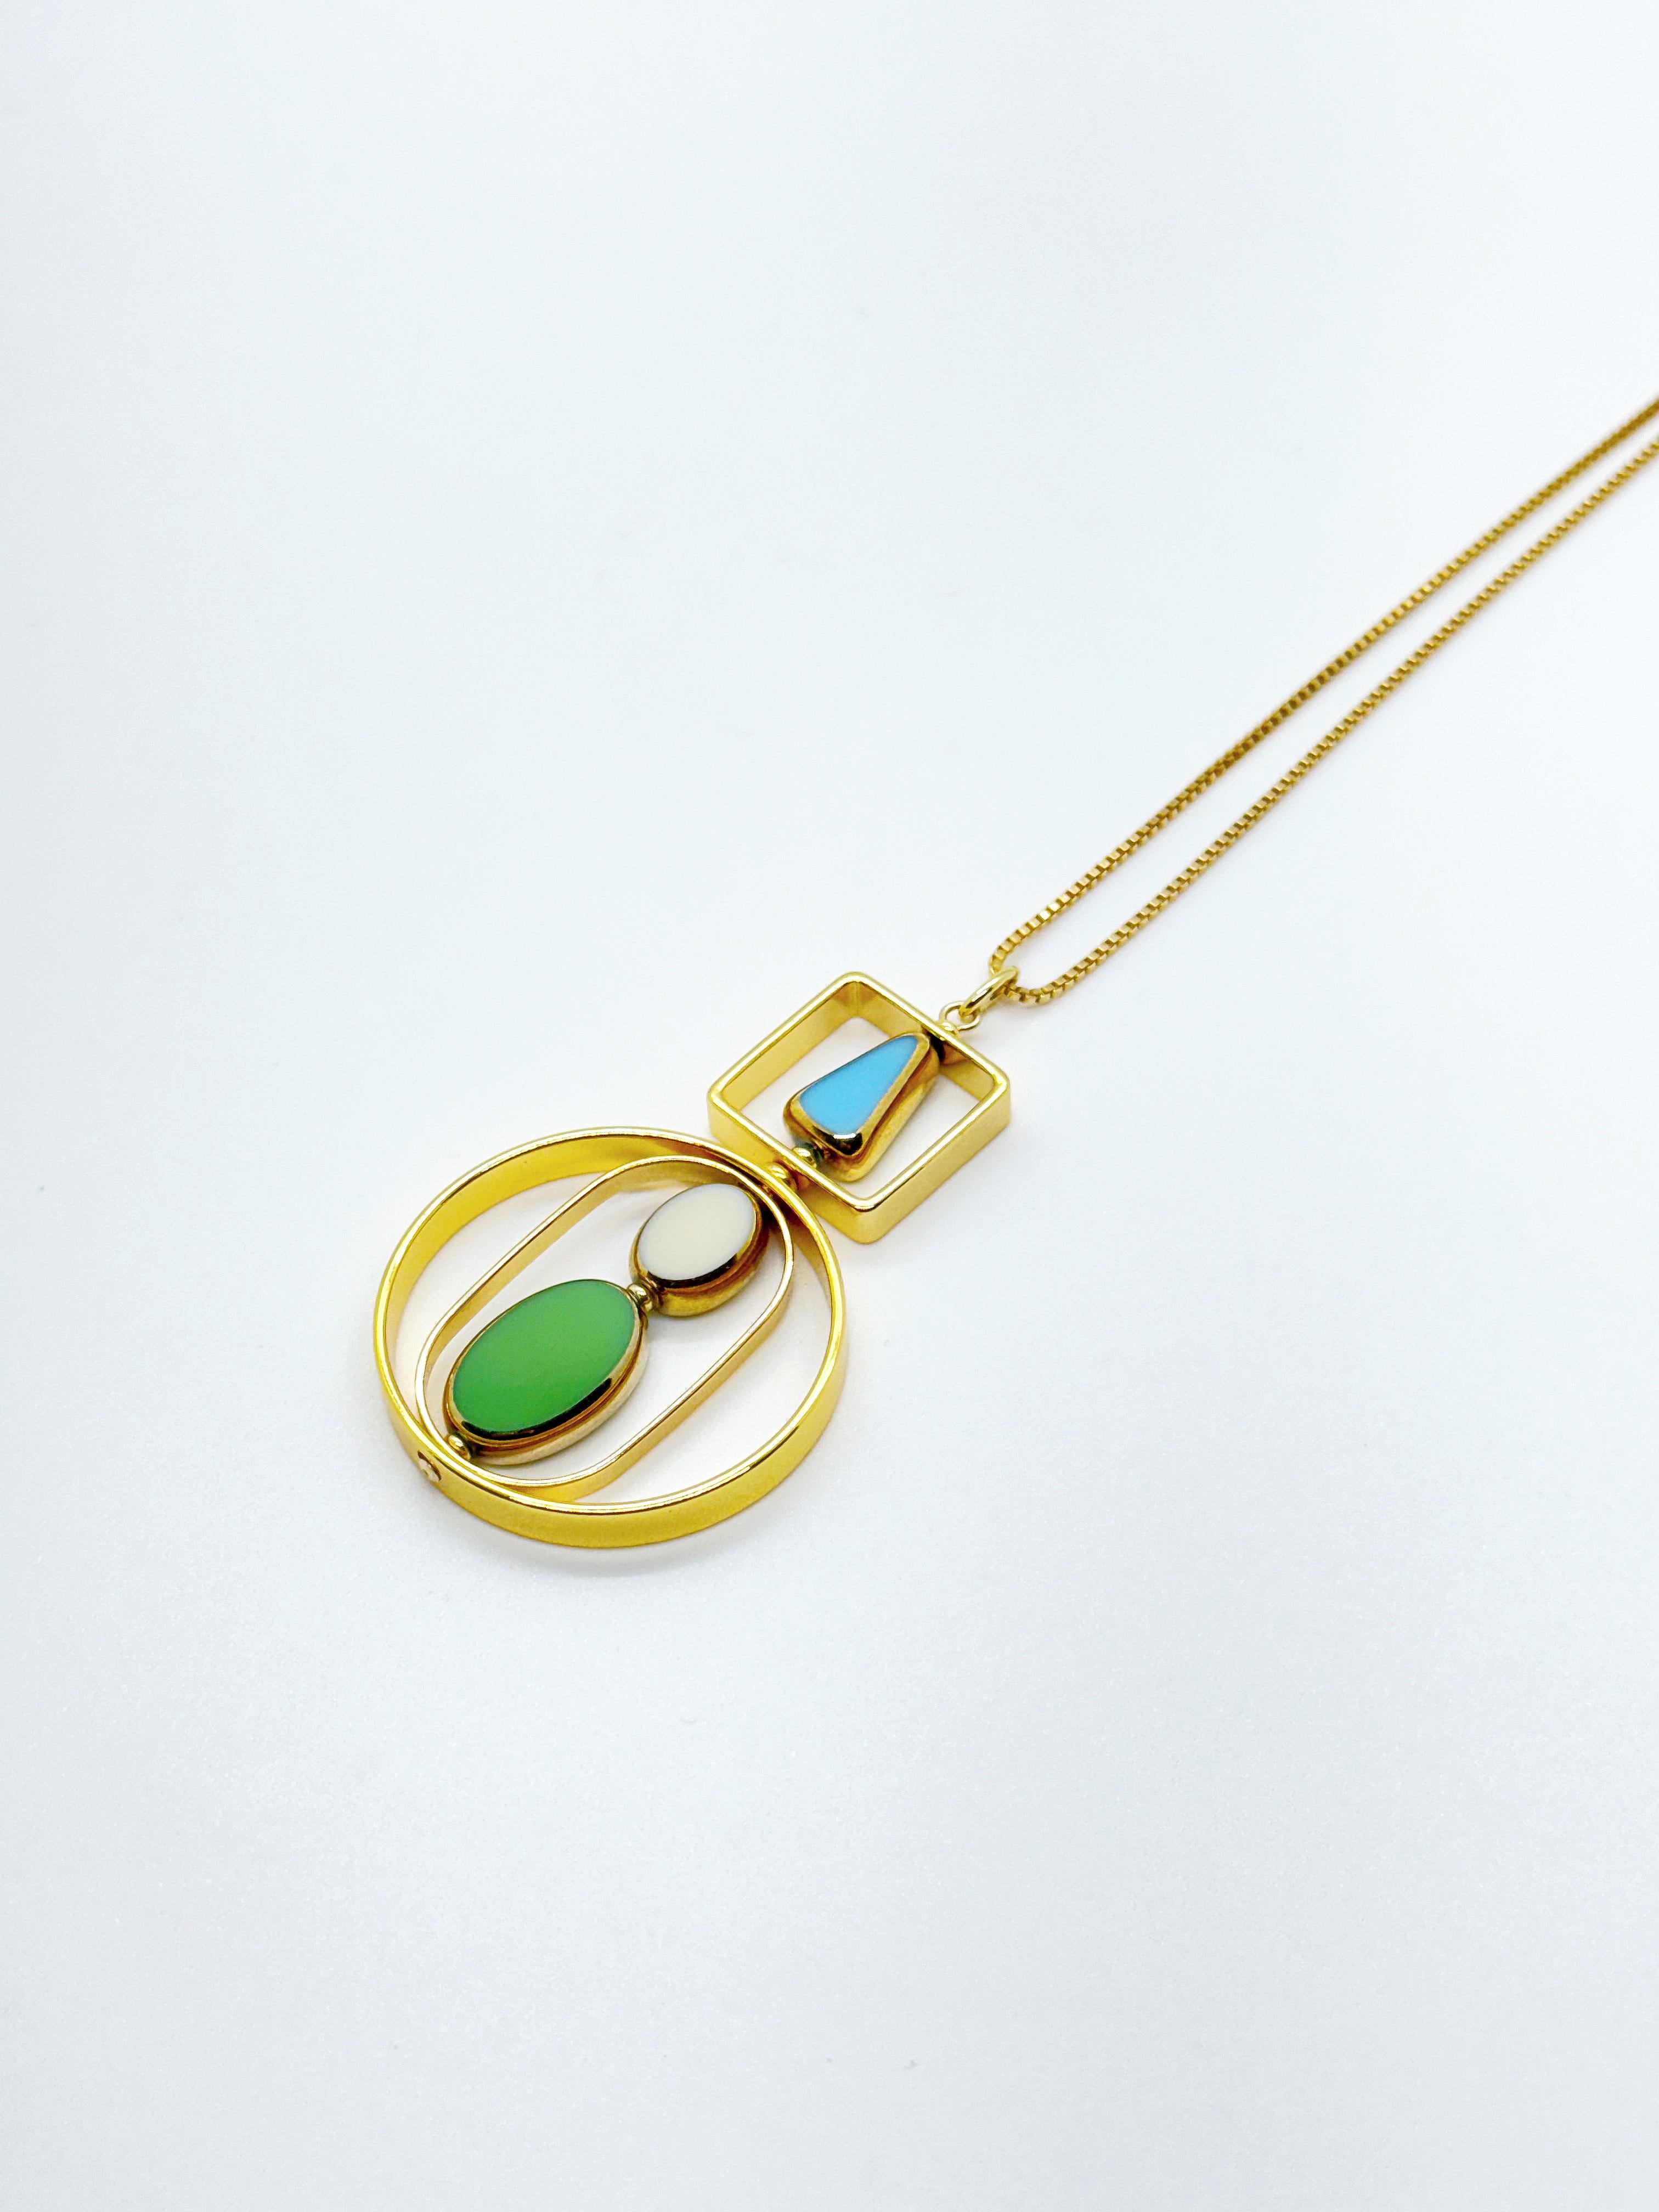 Le pendentif est composé de perles de verre allemandes vintage bleu layette, beige et vert et se termine par une chaîne en or de 18 pouces. 

Les perles sont de nouvelles perles de verre allemandes vintage qui sont encadrées avec de l'or 24K. Les